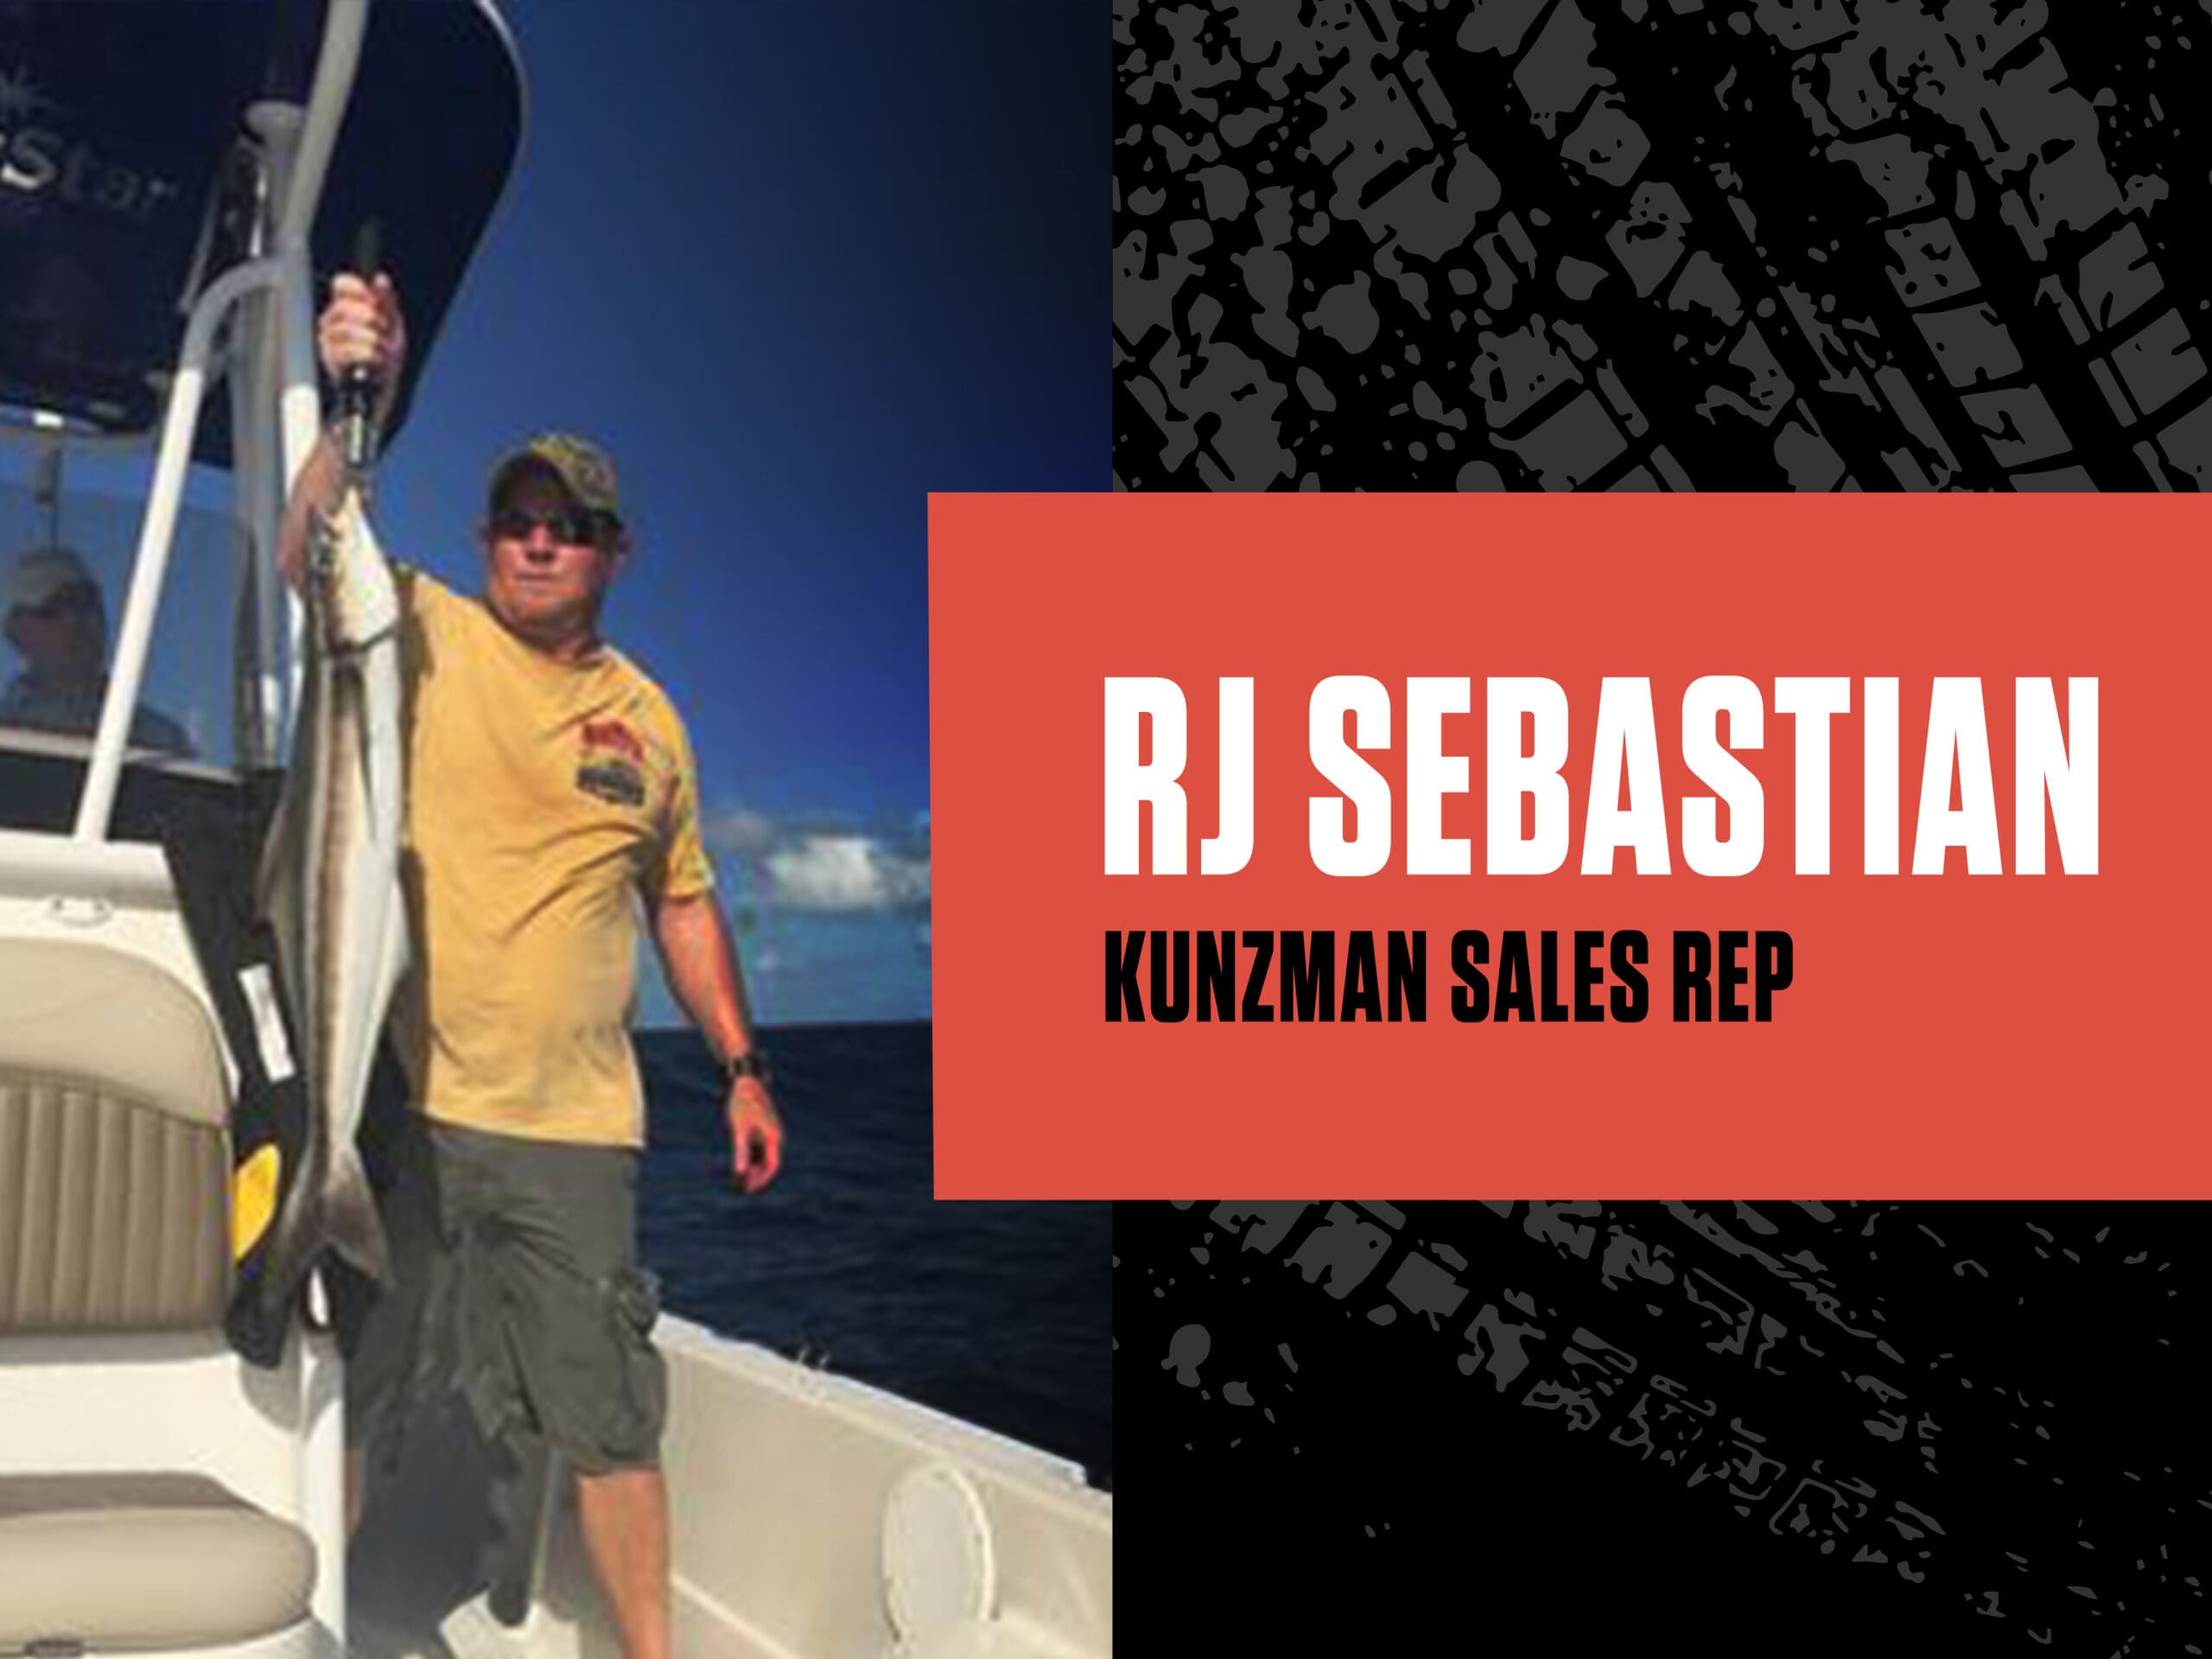 Meet Kunzman Sales Rep, RJ Sebastian